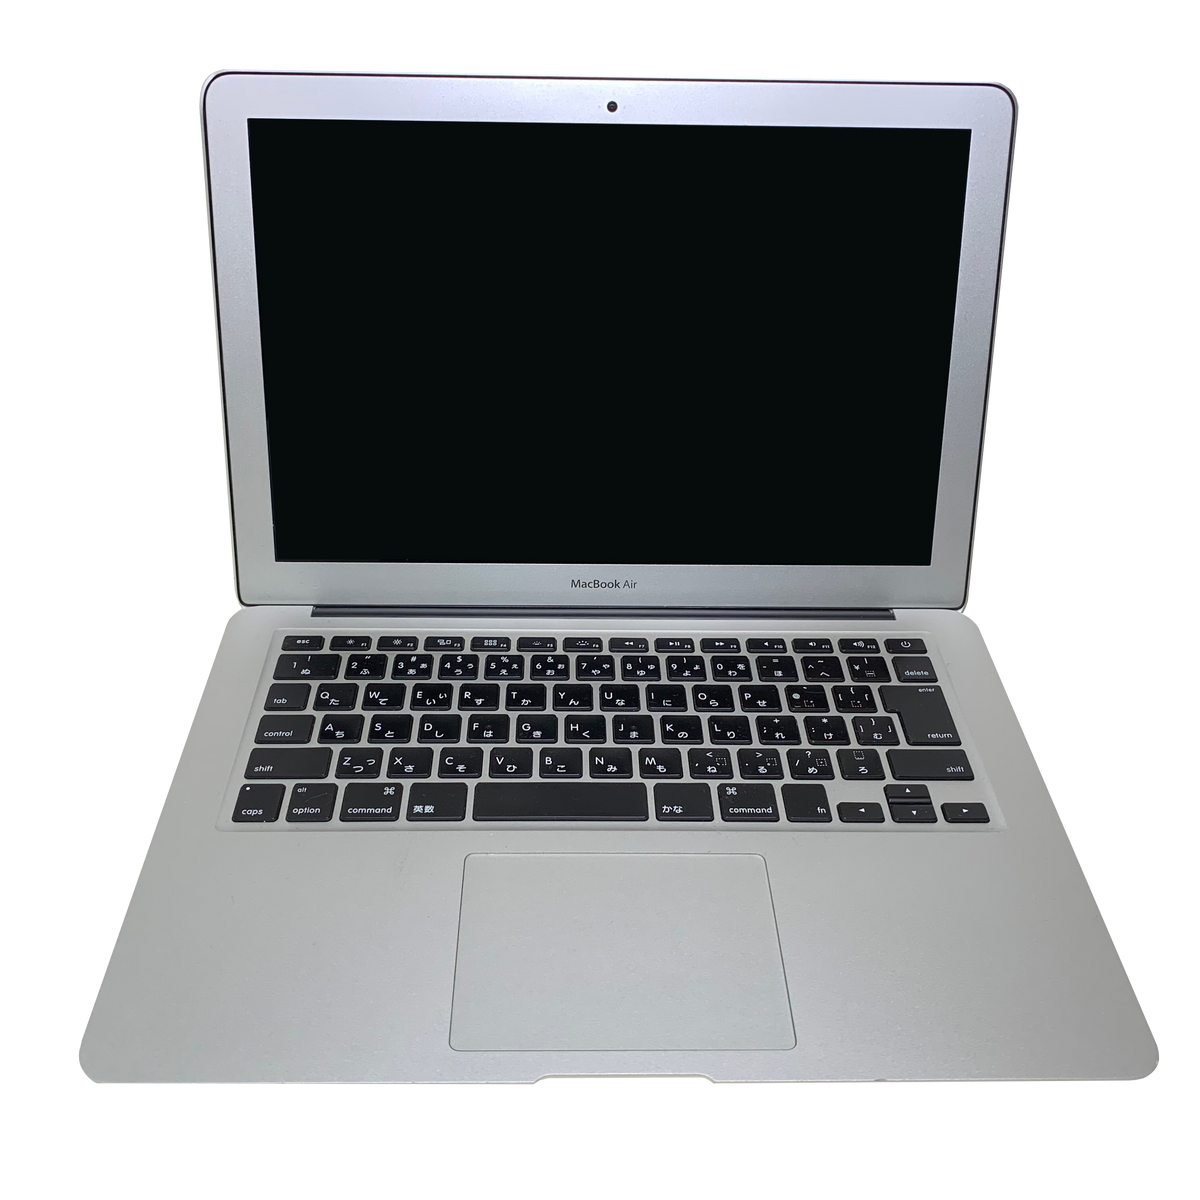 初心者向け Macbook Airの使い方やおすすめ設定方法を解説 Flarii